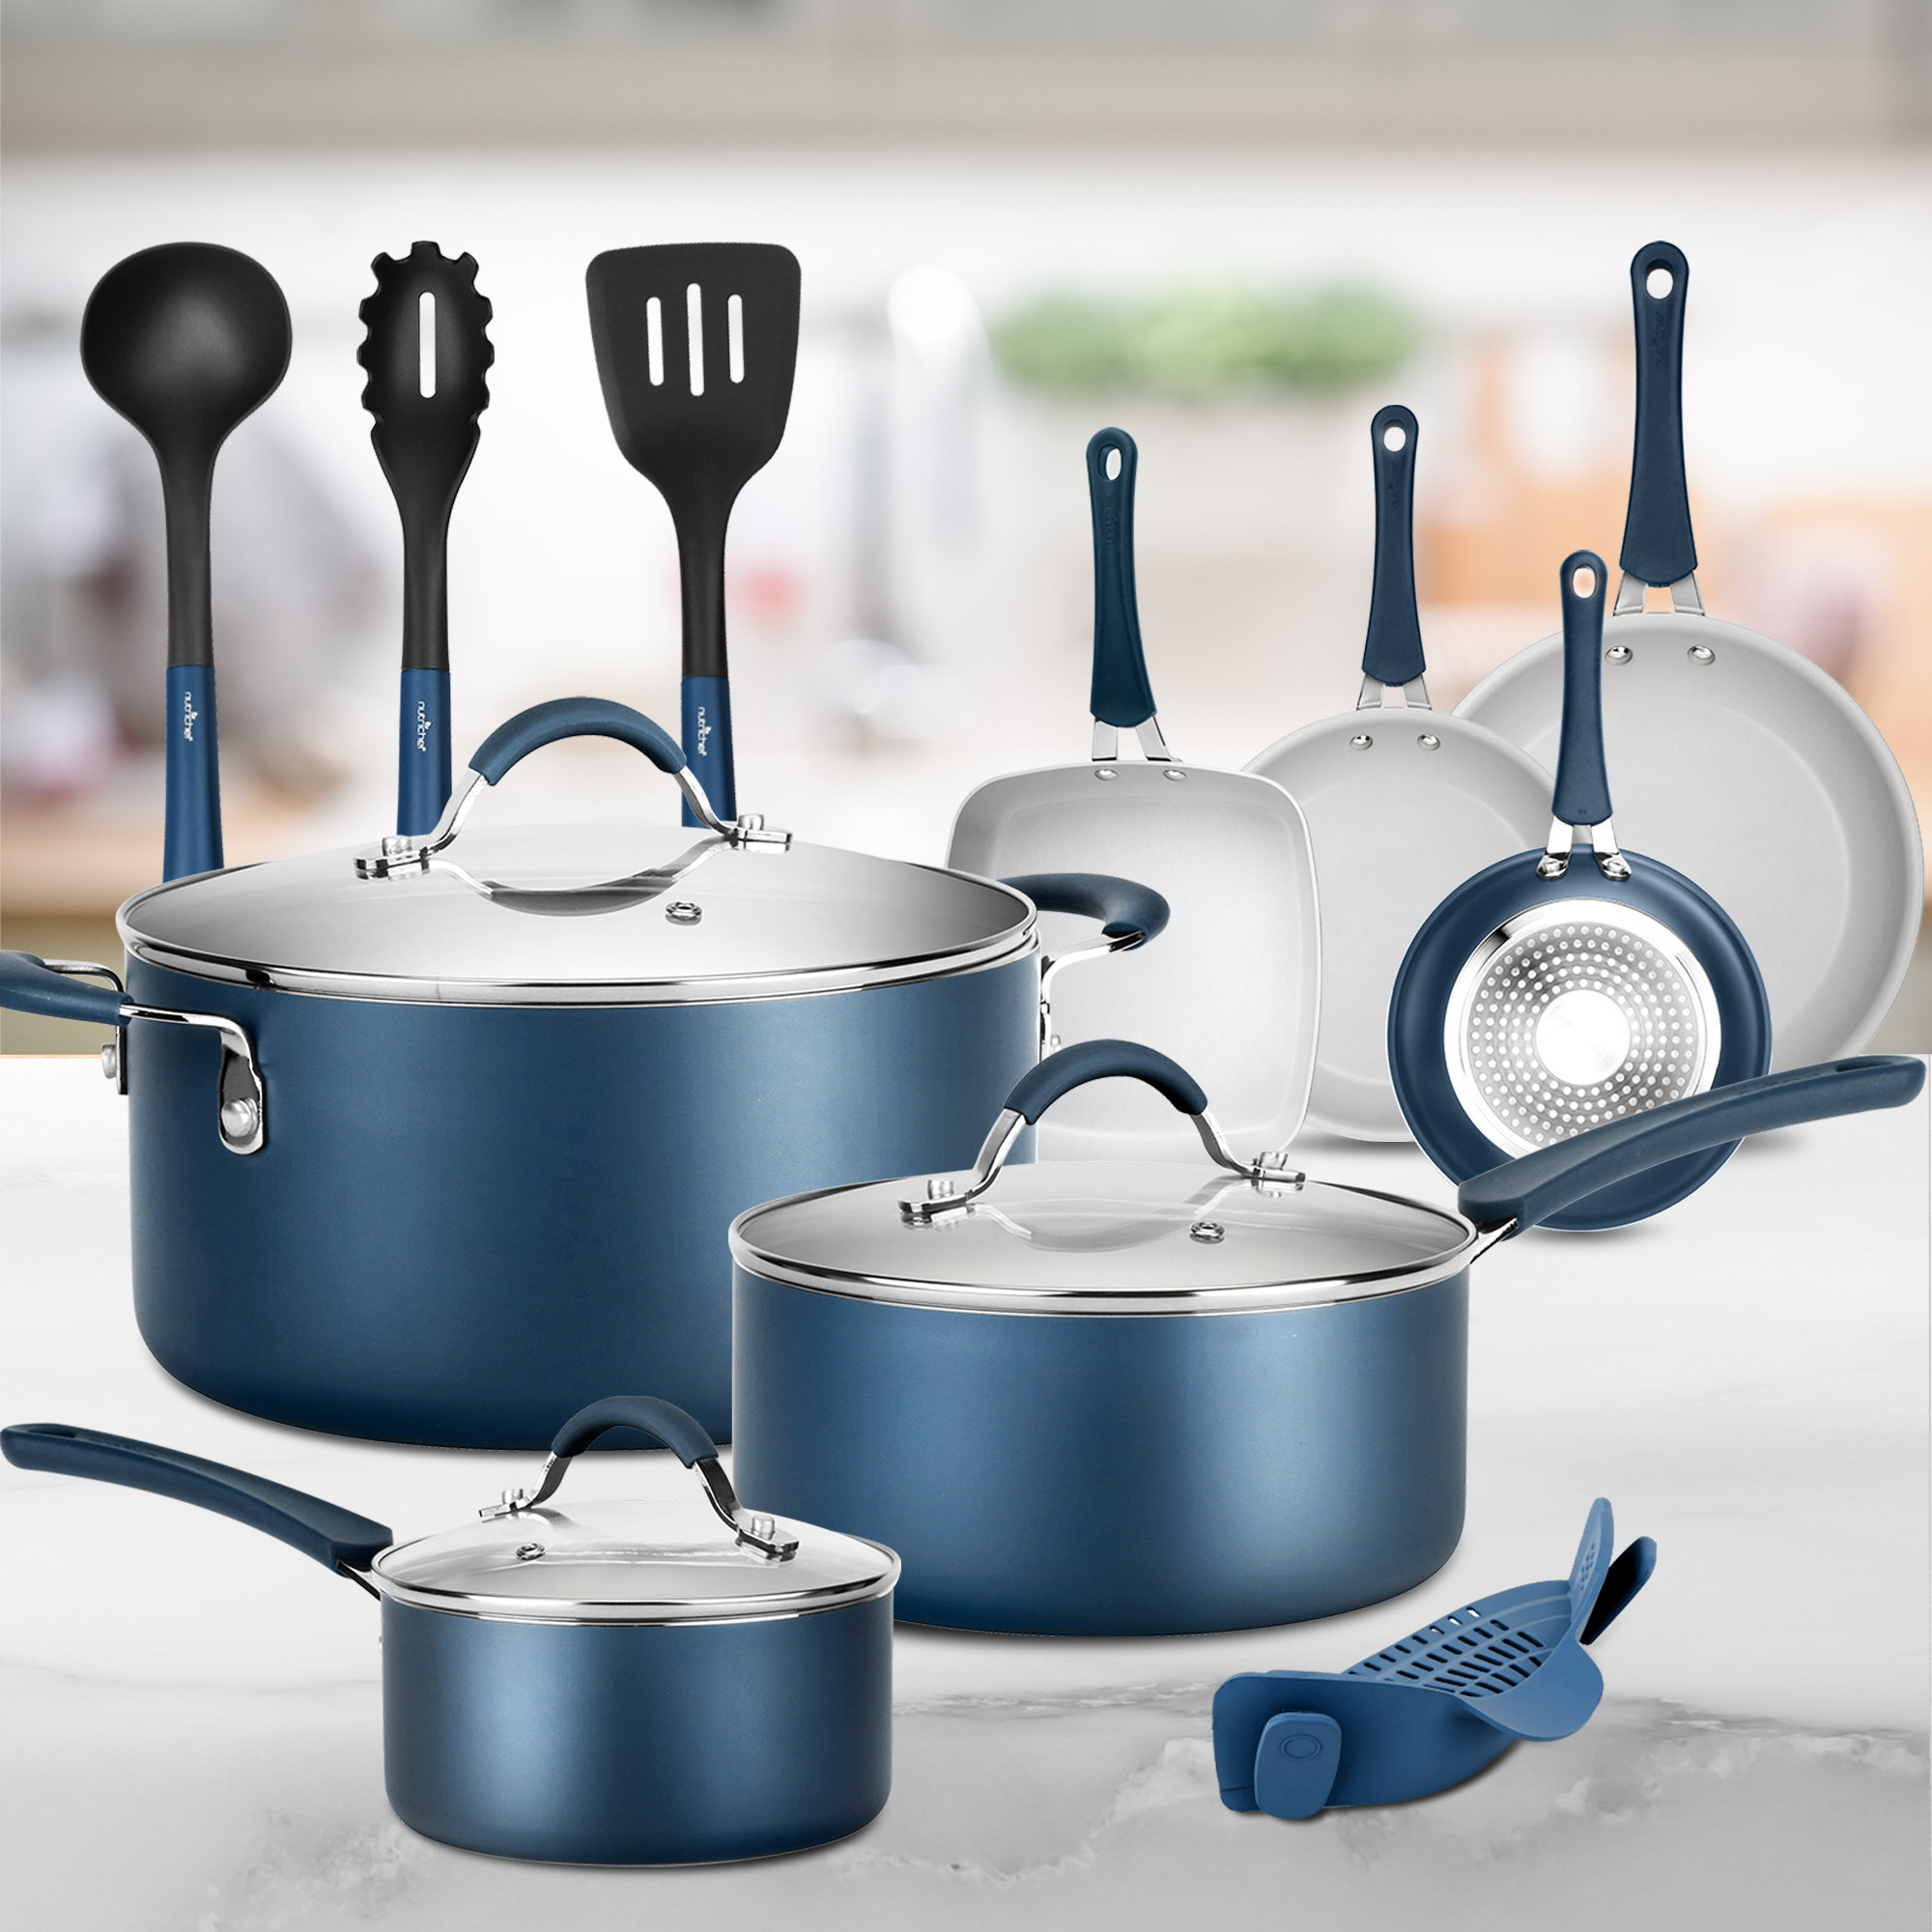 https://assets.wfcdn.com/im/31376740/compr-r85/2002/200275659/14-piece-non-stick-stainless-steel-1810-cookware-set.jpg